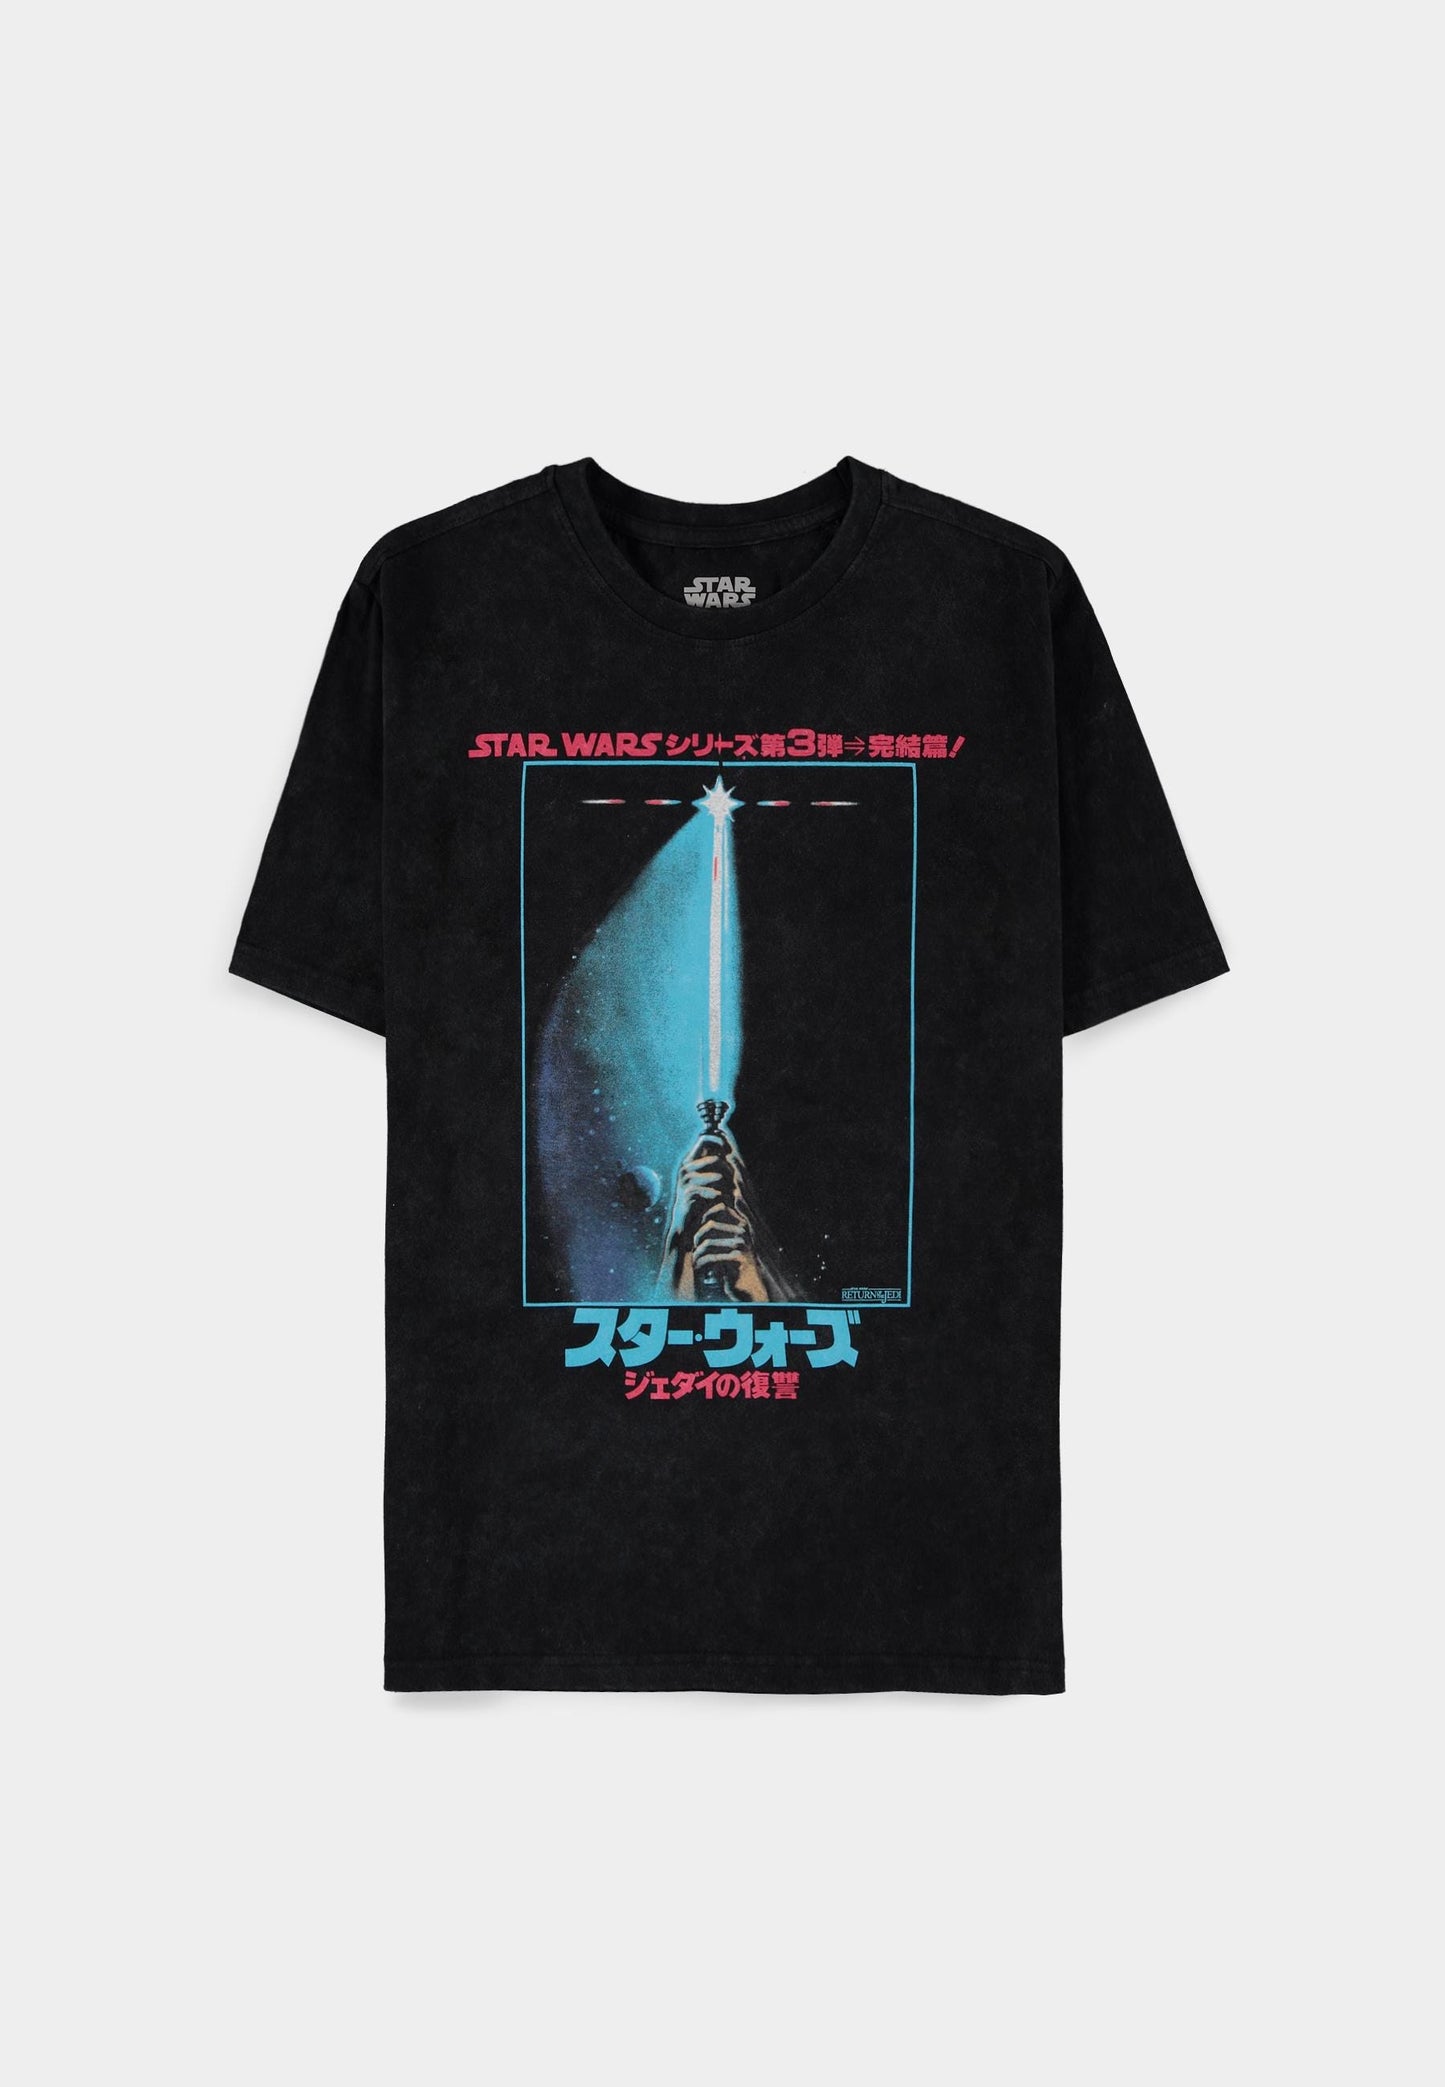 Star Wars - Men's Regular Fit Short Sleeved T-shirt